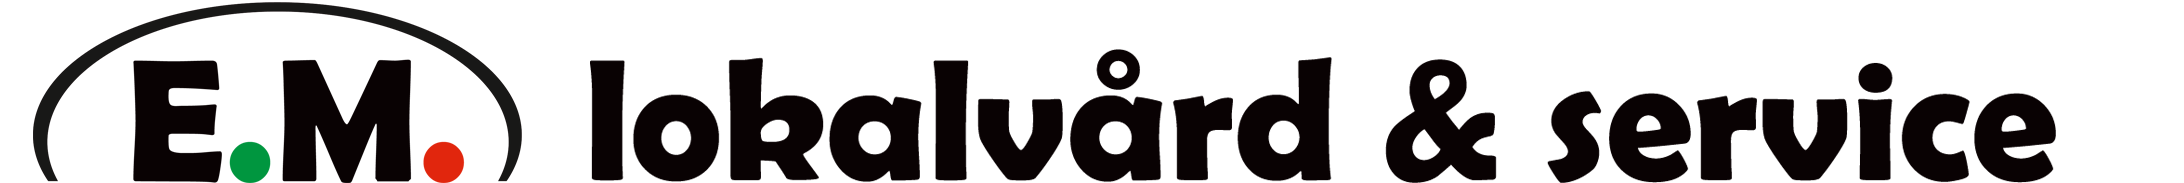 E.M Lokalvård och service logotyp.